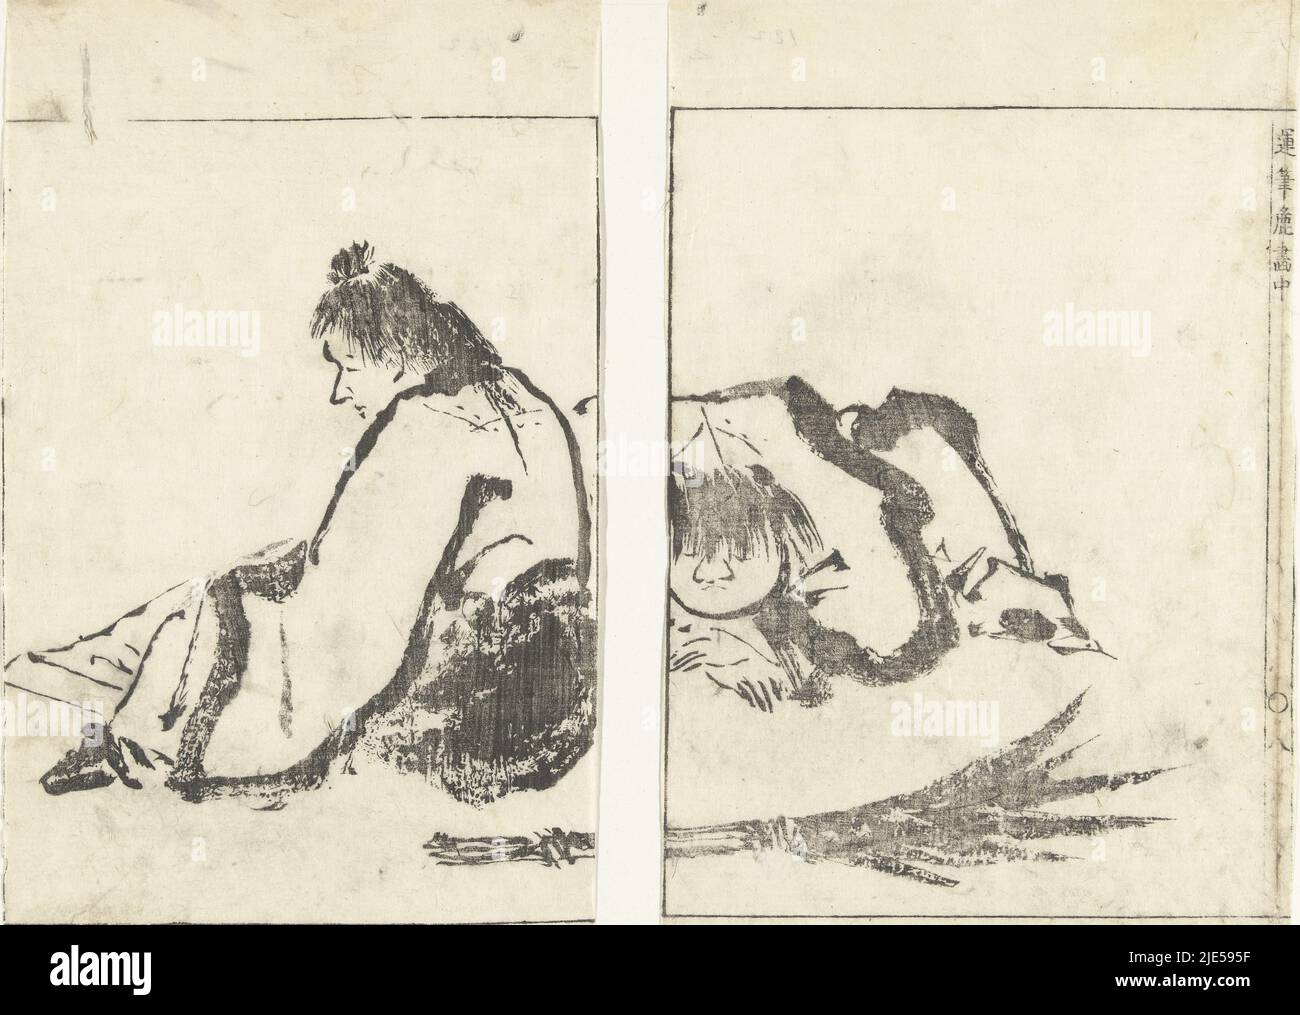 Dos hombres sentados cerca de un bosque atado por ramas de bambú. Dos páginas del libro japonés Umpitsu soga, en la página derecha la página número ocho, dos hombres Imágenes en pinceladas suaves (título de la serie) Umpitsu soga (título de la serie sobre el objeto), fabricante de impresión: Tachibana Morikuni, editor: Nishimura Genroku, Japón, 1849, papel, alt. 257 mm x anch. 152 mm, alt. 254 mm x anch. 159 mm Foto de stock